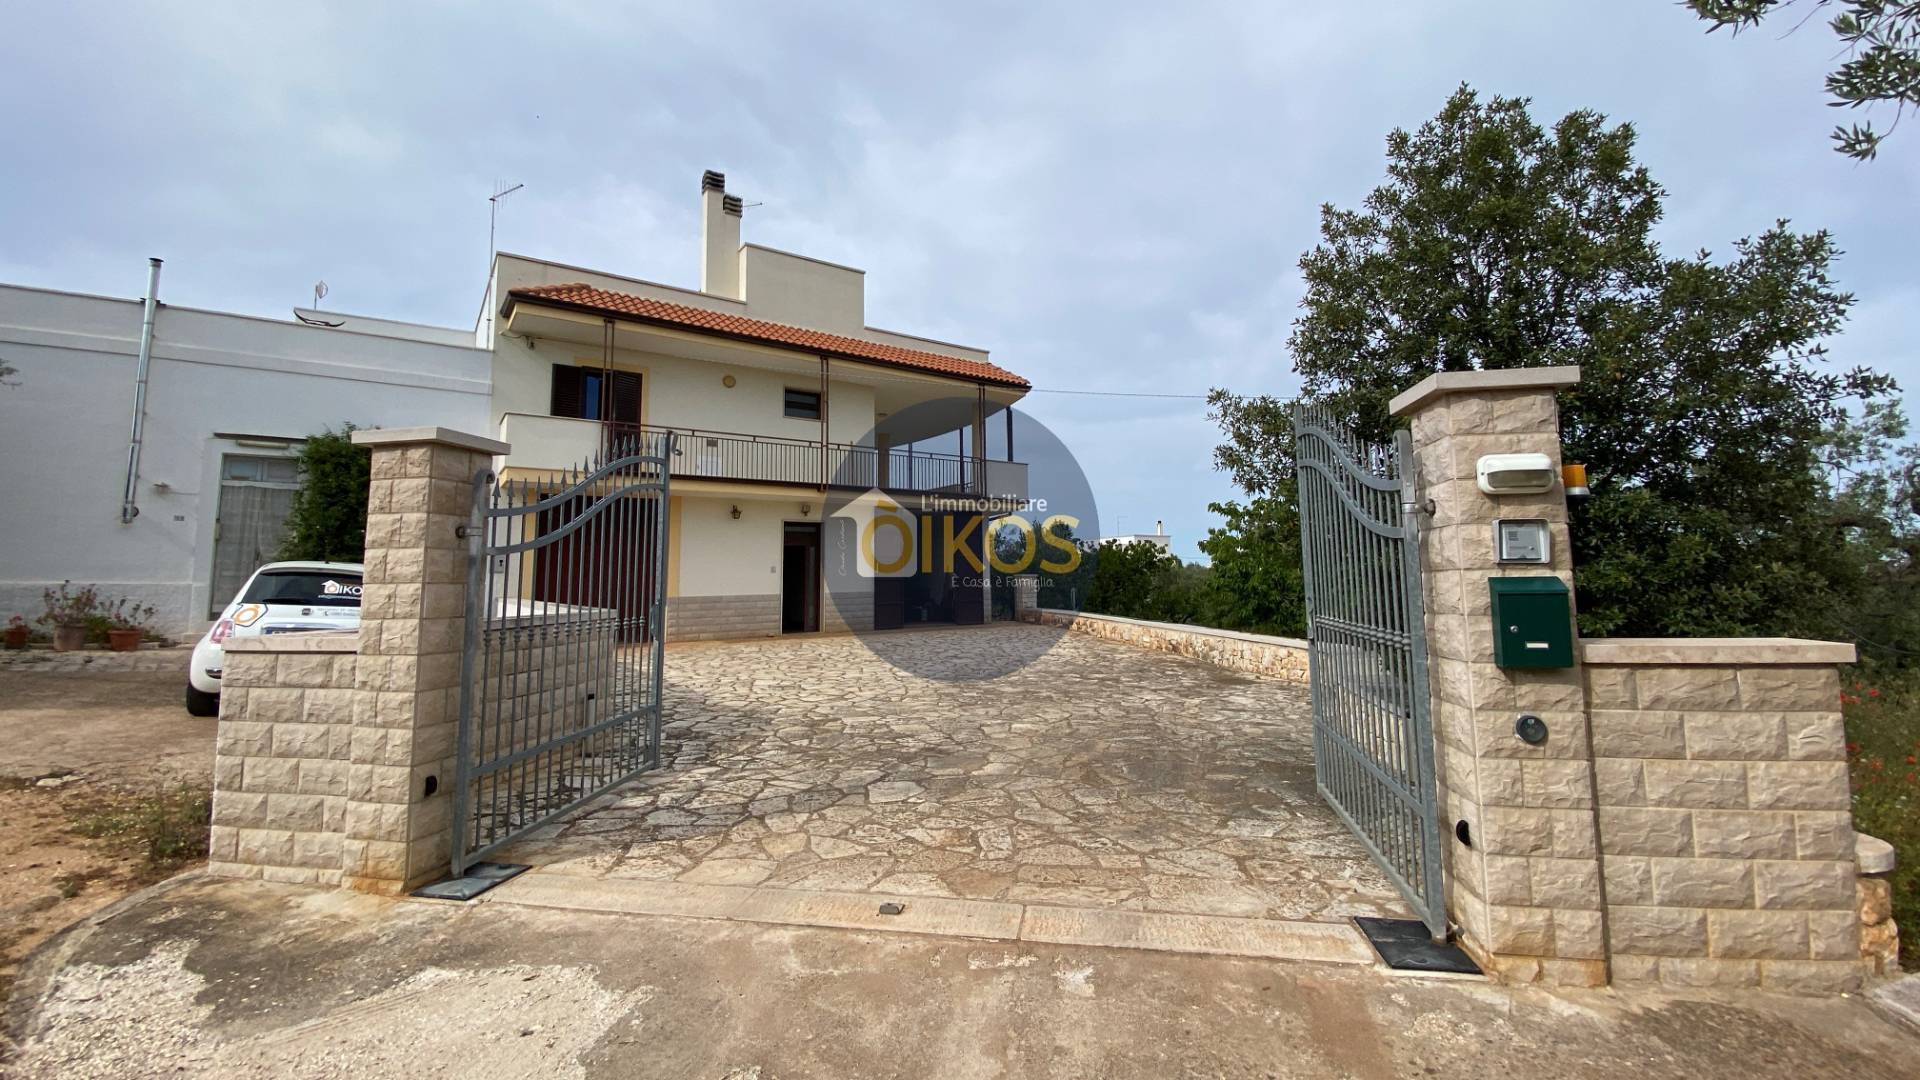 Villa in vendita a Monopoli, 2 locali, prezzo € 270.000 | PortaleAgenzieImmobiliari.it